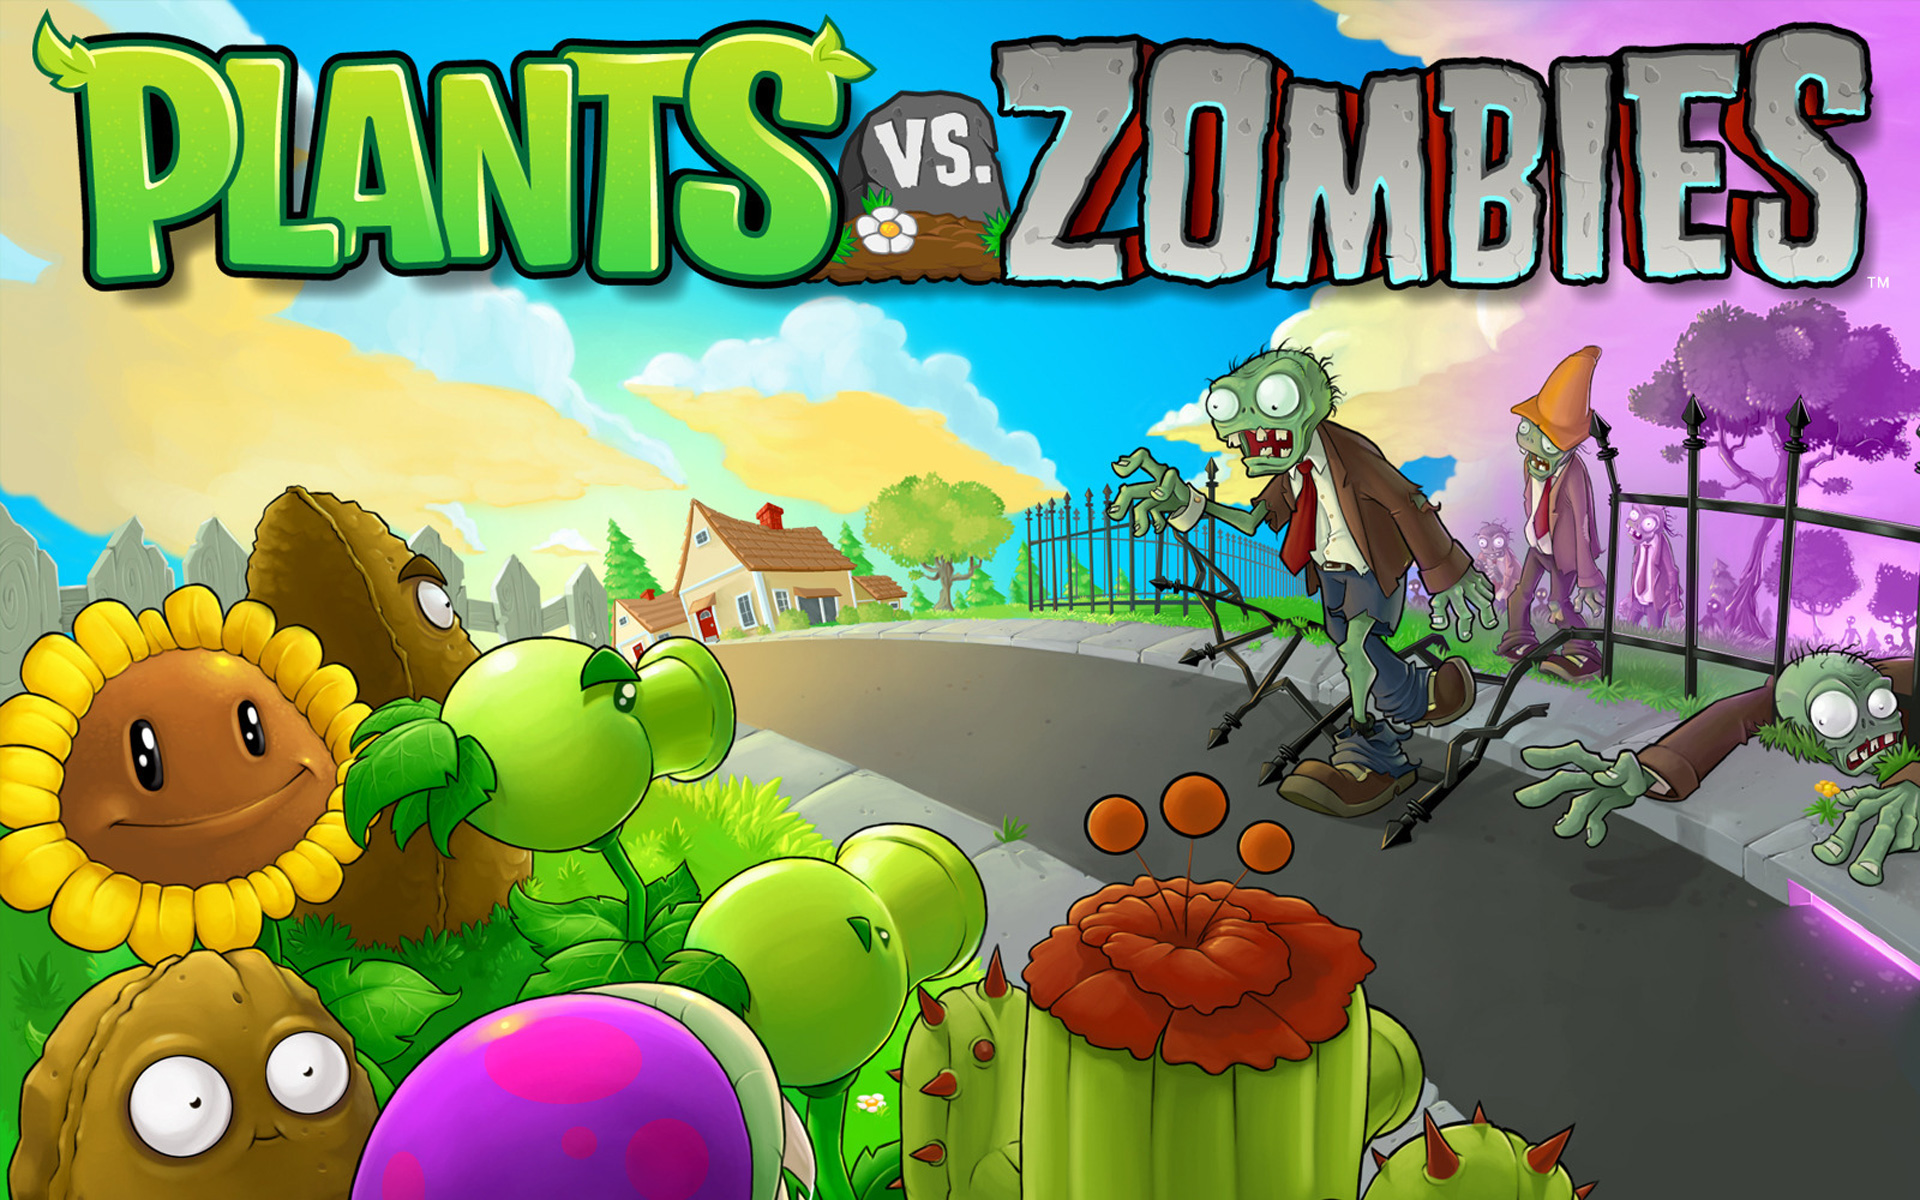 Steam Community :: Guide :: 100% Achievement Guide: Plants vs. Zombies